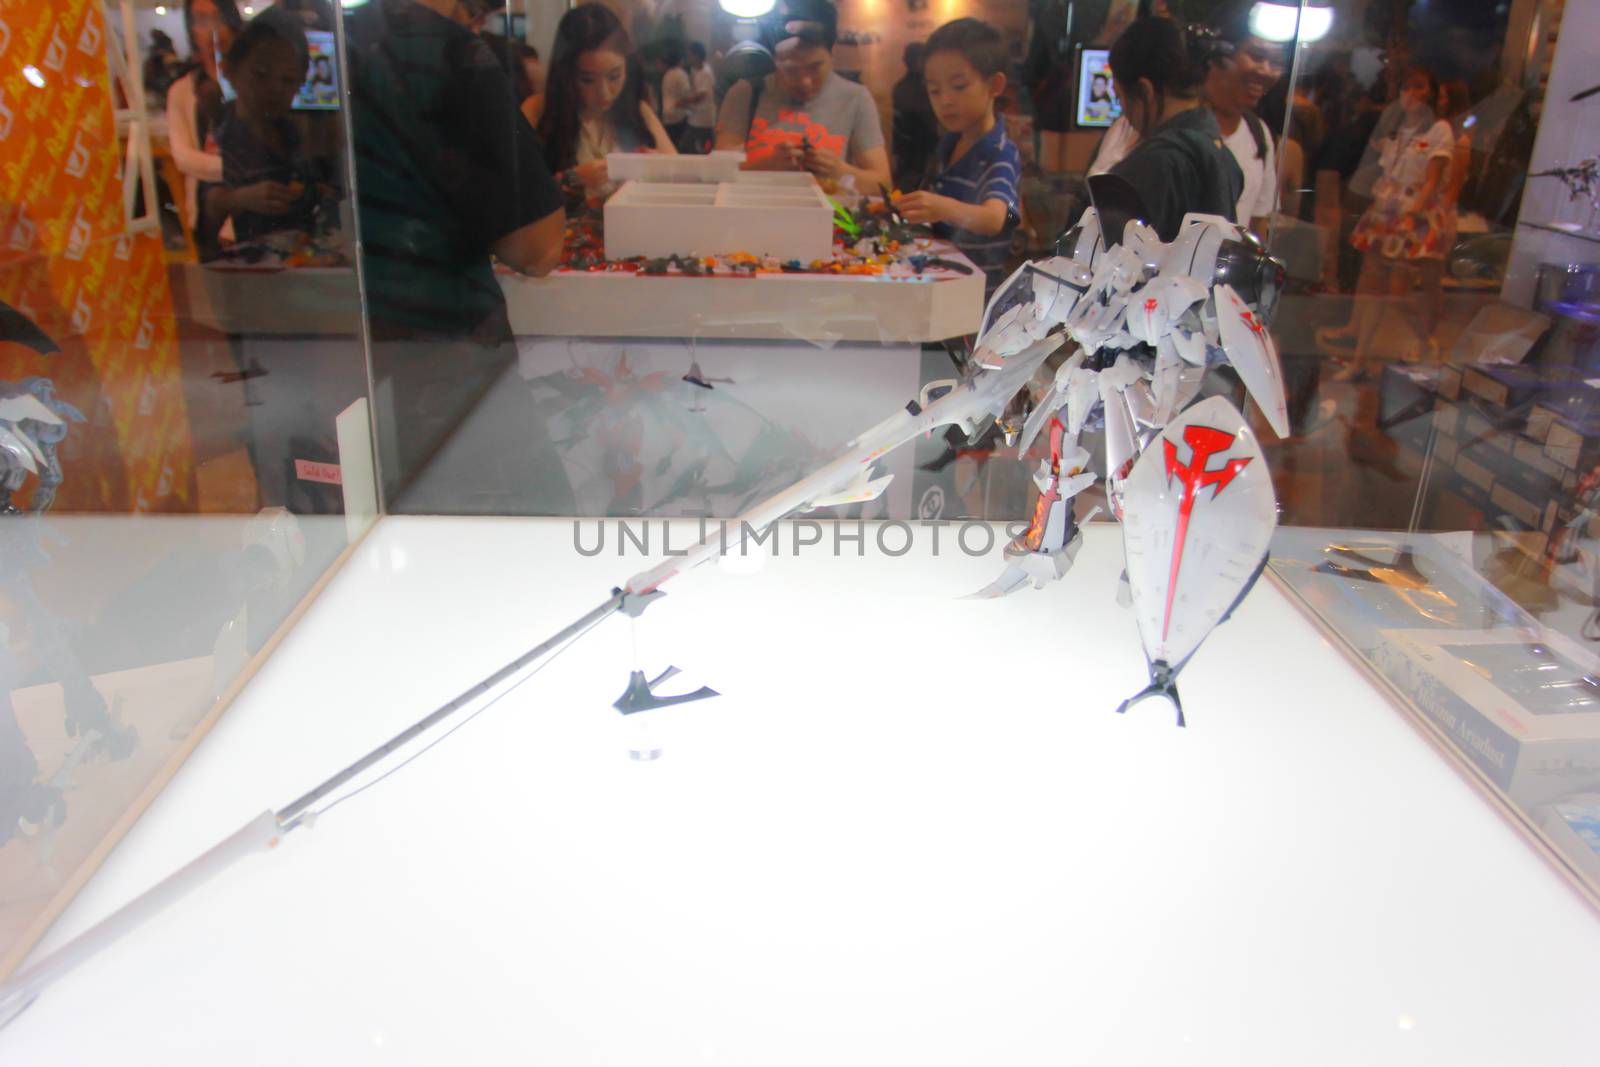 BANGKOK - MAY. 11: A Gundam model in Thailand Comic Con 2014 on May 11, 2014 at Siam Paragon, Bangkok, Thailand.